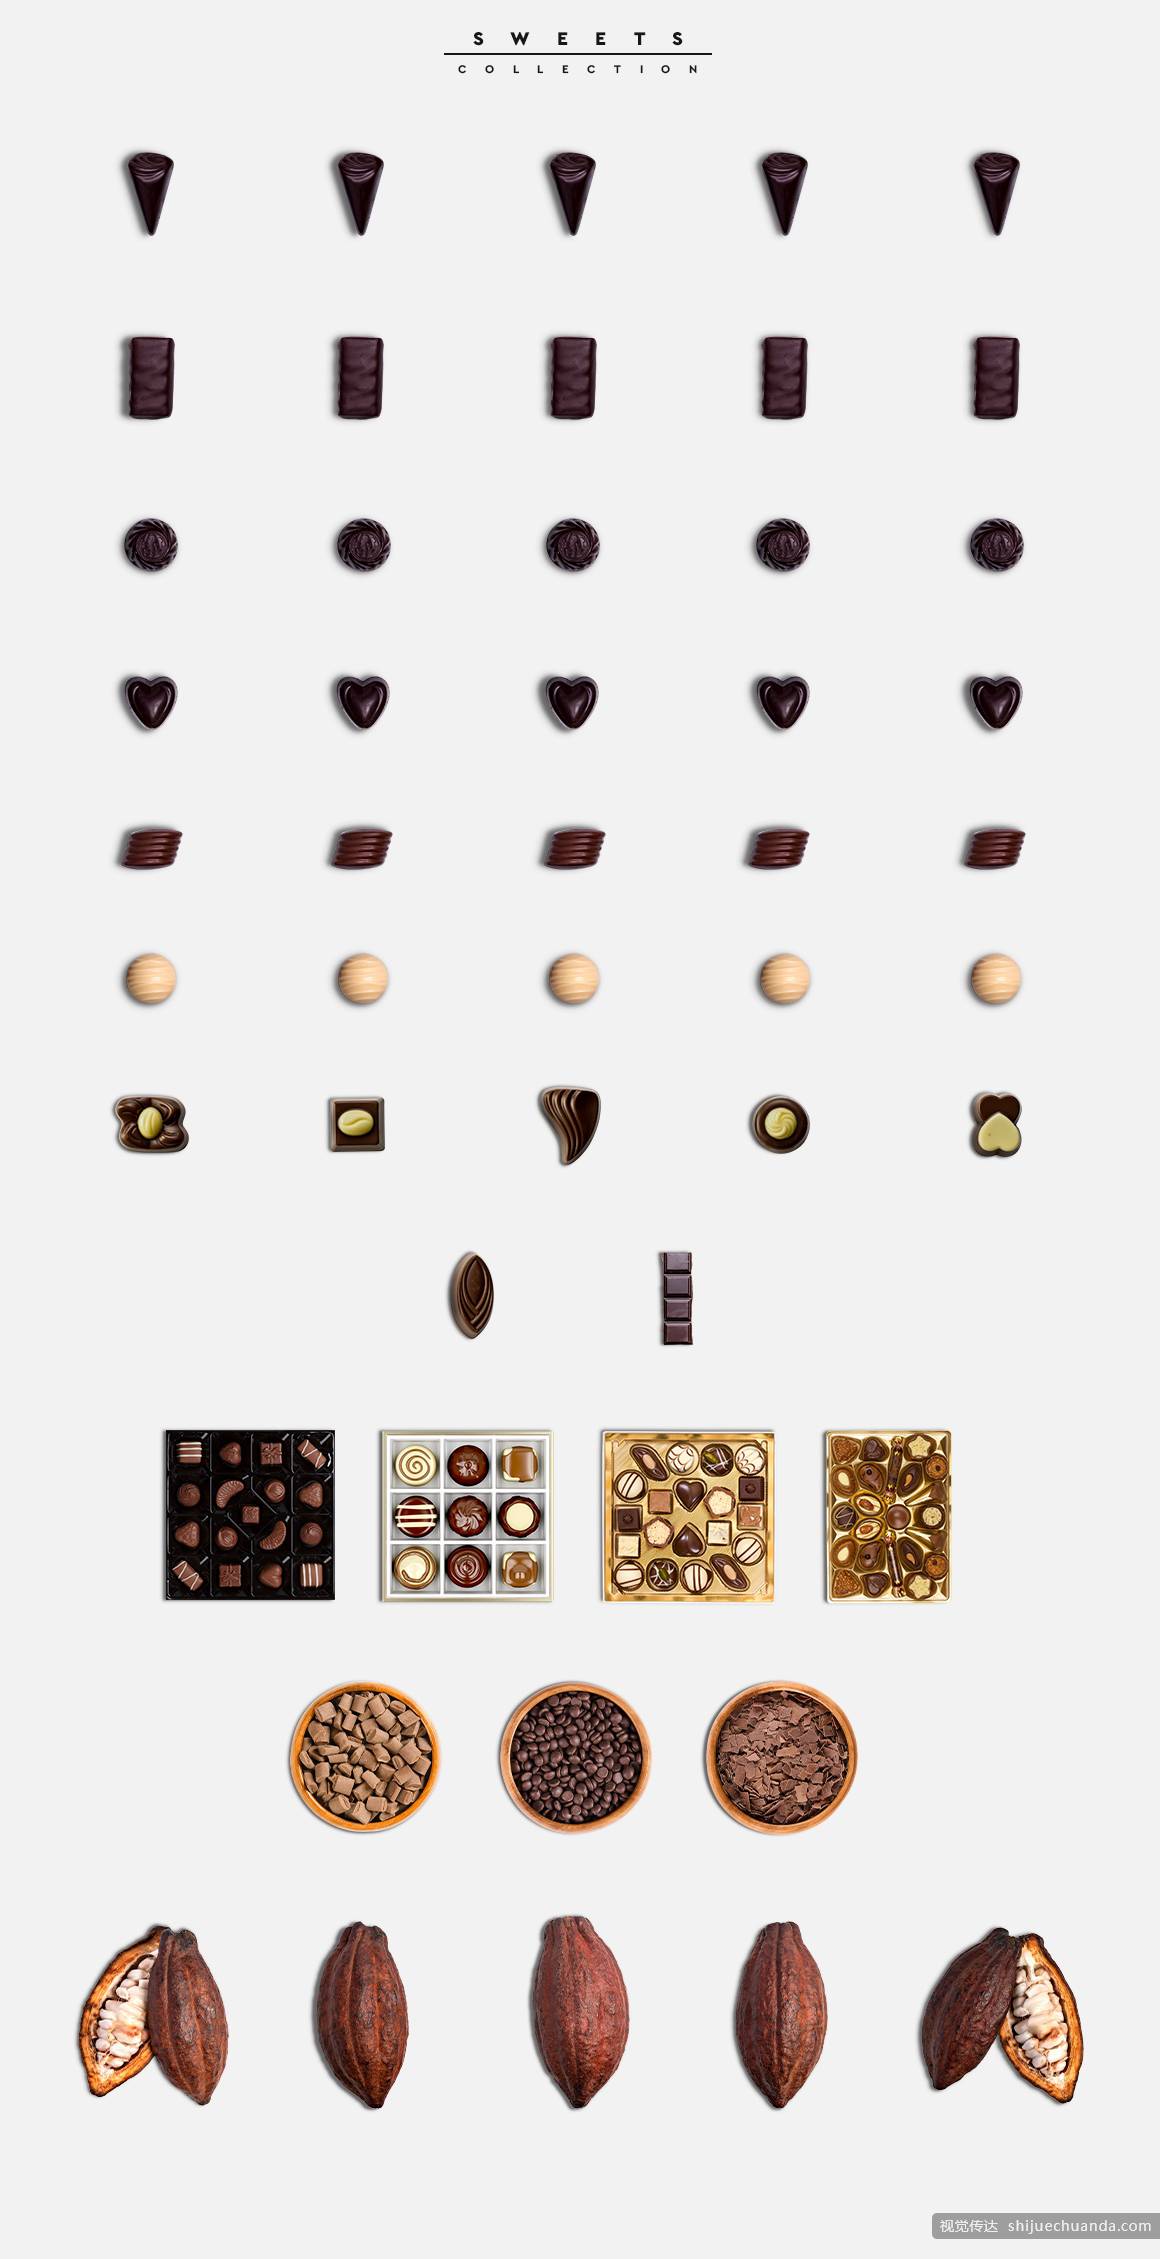 巧克力场景生成器模板 Chocolate Scene Creator